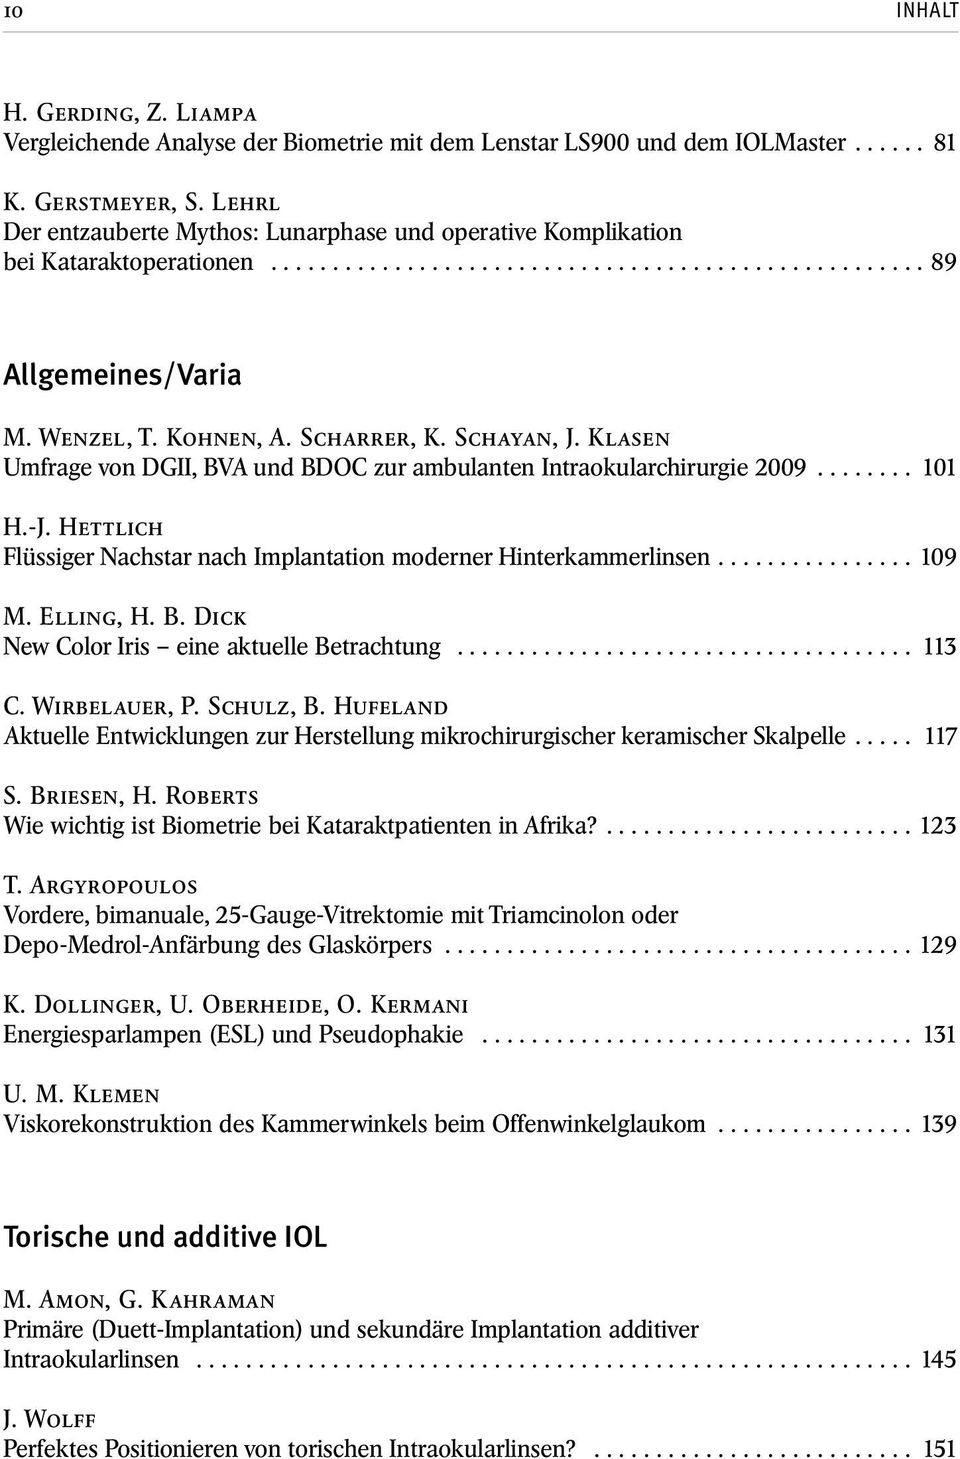 Scharrer, K. Schayan, J. Klasen Umfrage von DGII, BVA und BDOC zur ambulanten Intraokularchirurgie 2009........ 101 H.-J. Hettlich Flüssiger Nachstar nach Implantation moderner Hinterkammerlinsen.